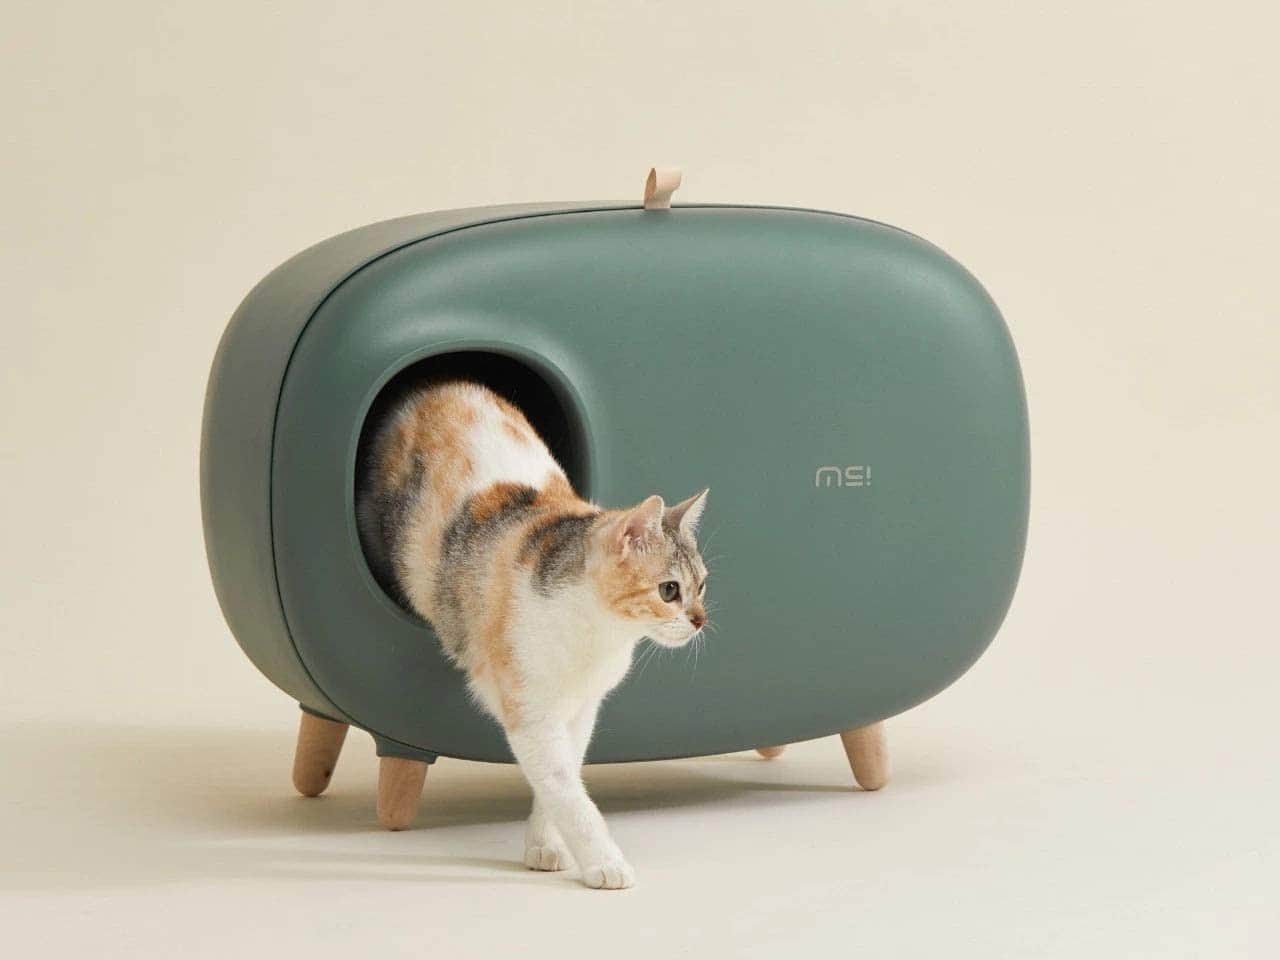 Sikoon MS Cat Litter Box